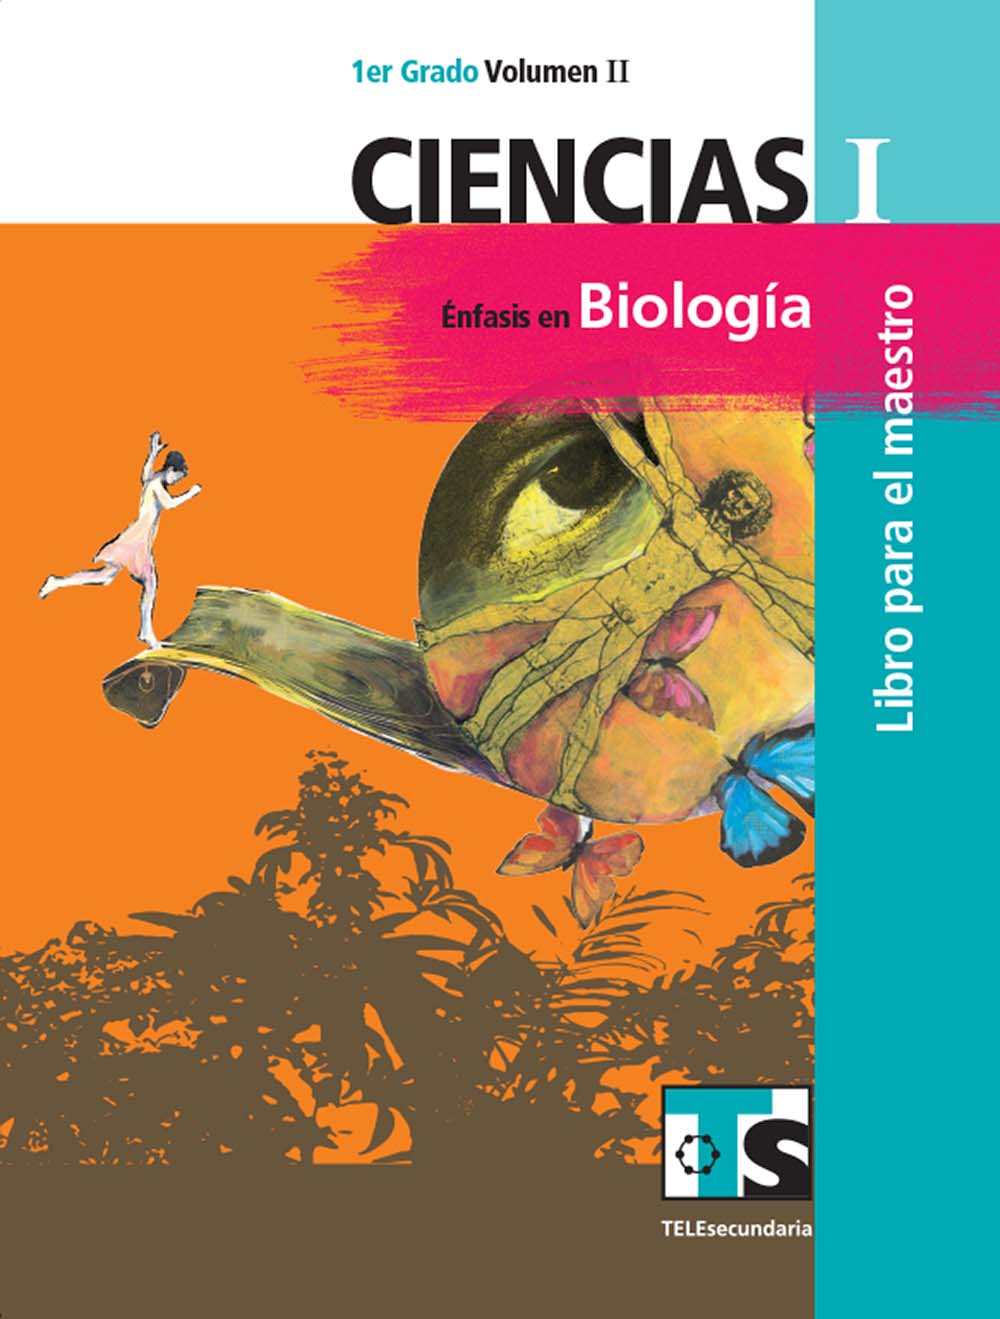 Ciencias I. Énfasis en Biologia. Vol. II. Libro para el Maestro., Editorial: Secretaría de Educación Pública, Nivel: Telesecundaria, Grado: 1